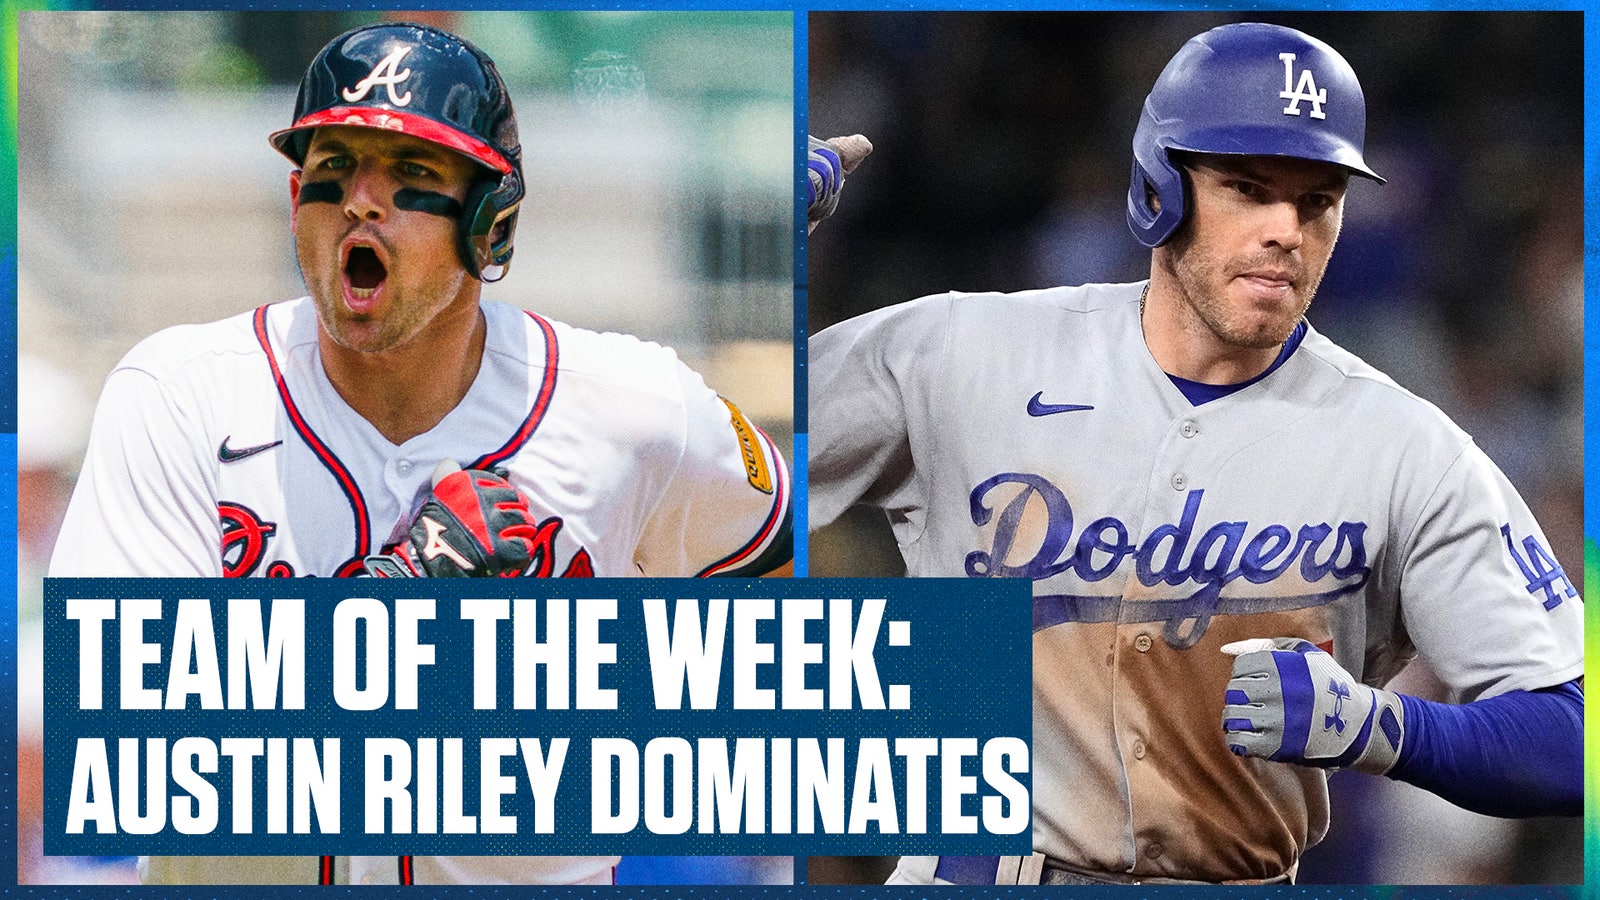 Atlanta Braves' Austin Riley & Dodgers' Freddie Freeman headline the Team of the Week 